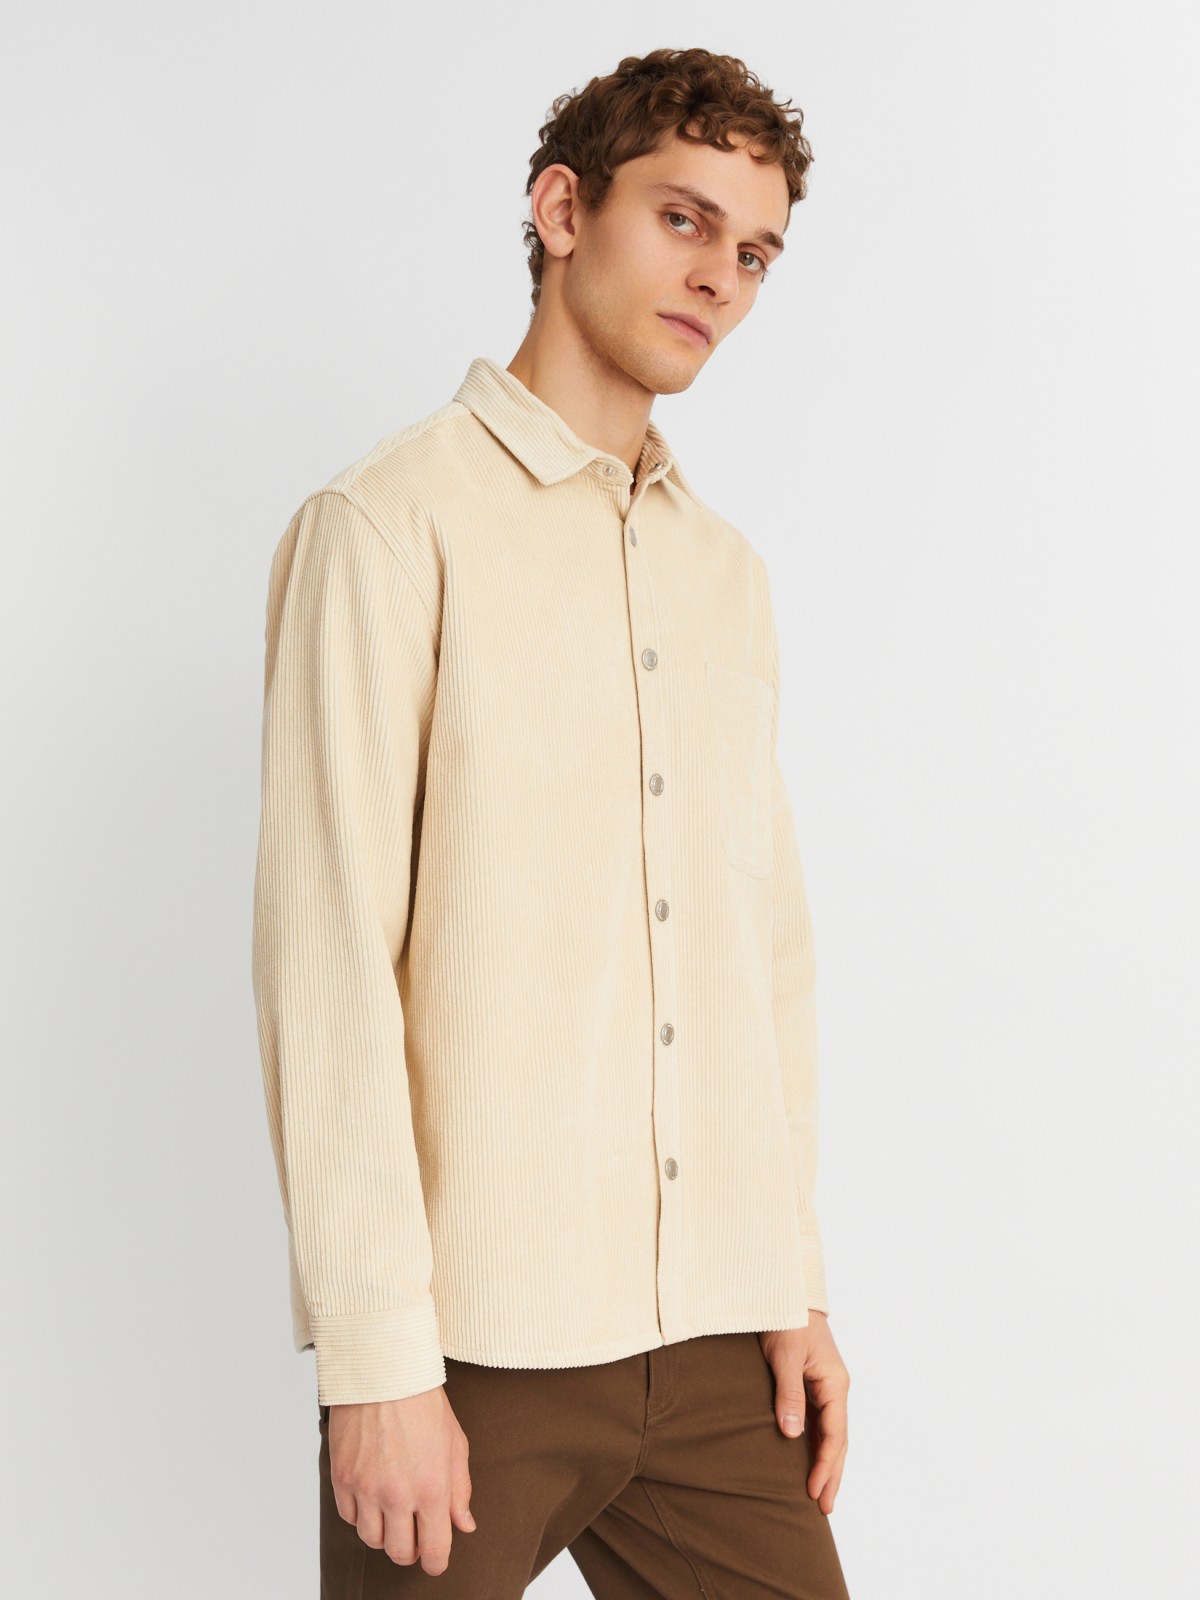 Вельветовая куртка-рубашка из хлопка с длинным рукавом zolla 21342214R041, цвет горчичный, размер M - фото 3